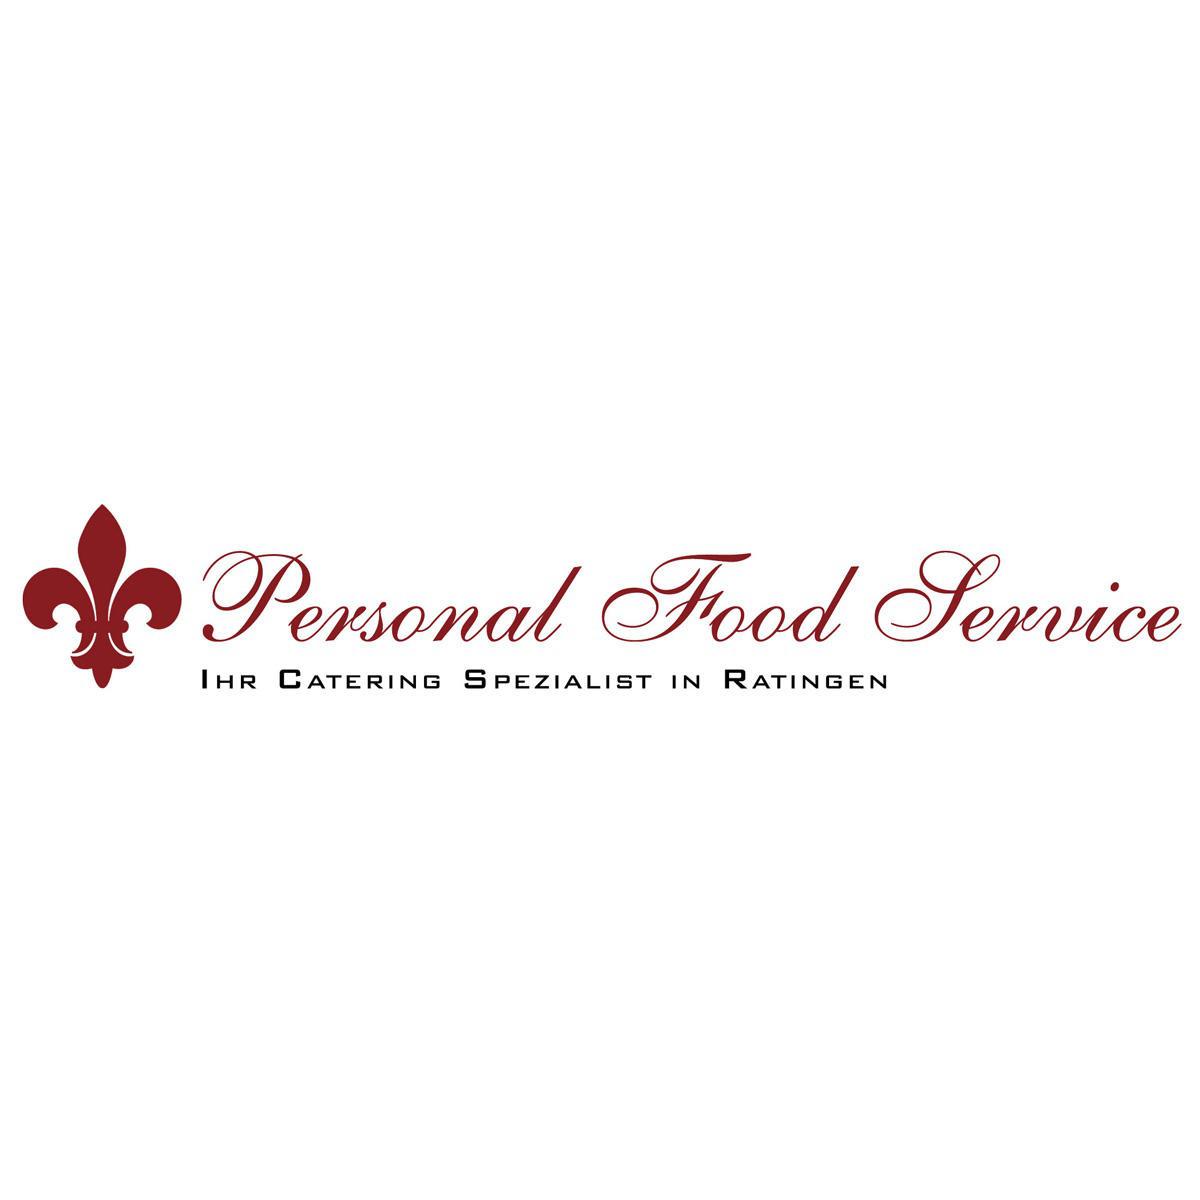 Personal Food Service Ihr Catering Spezialist Ratingen in Ratingen - Logo